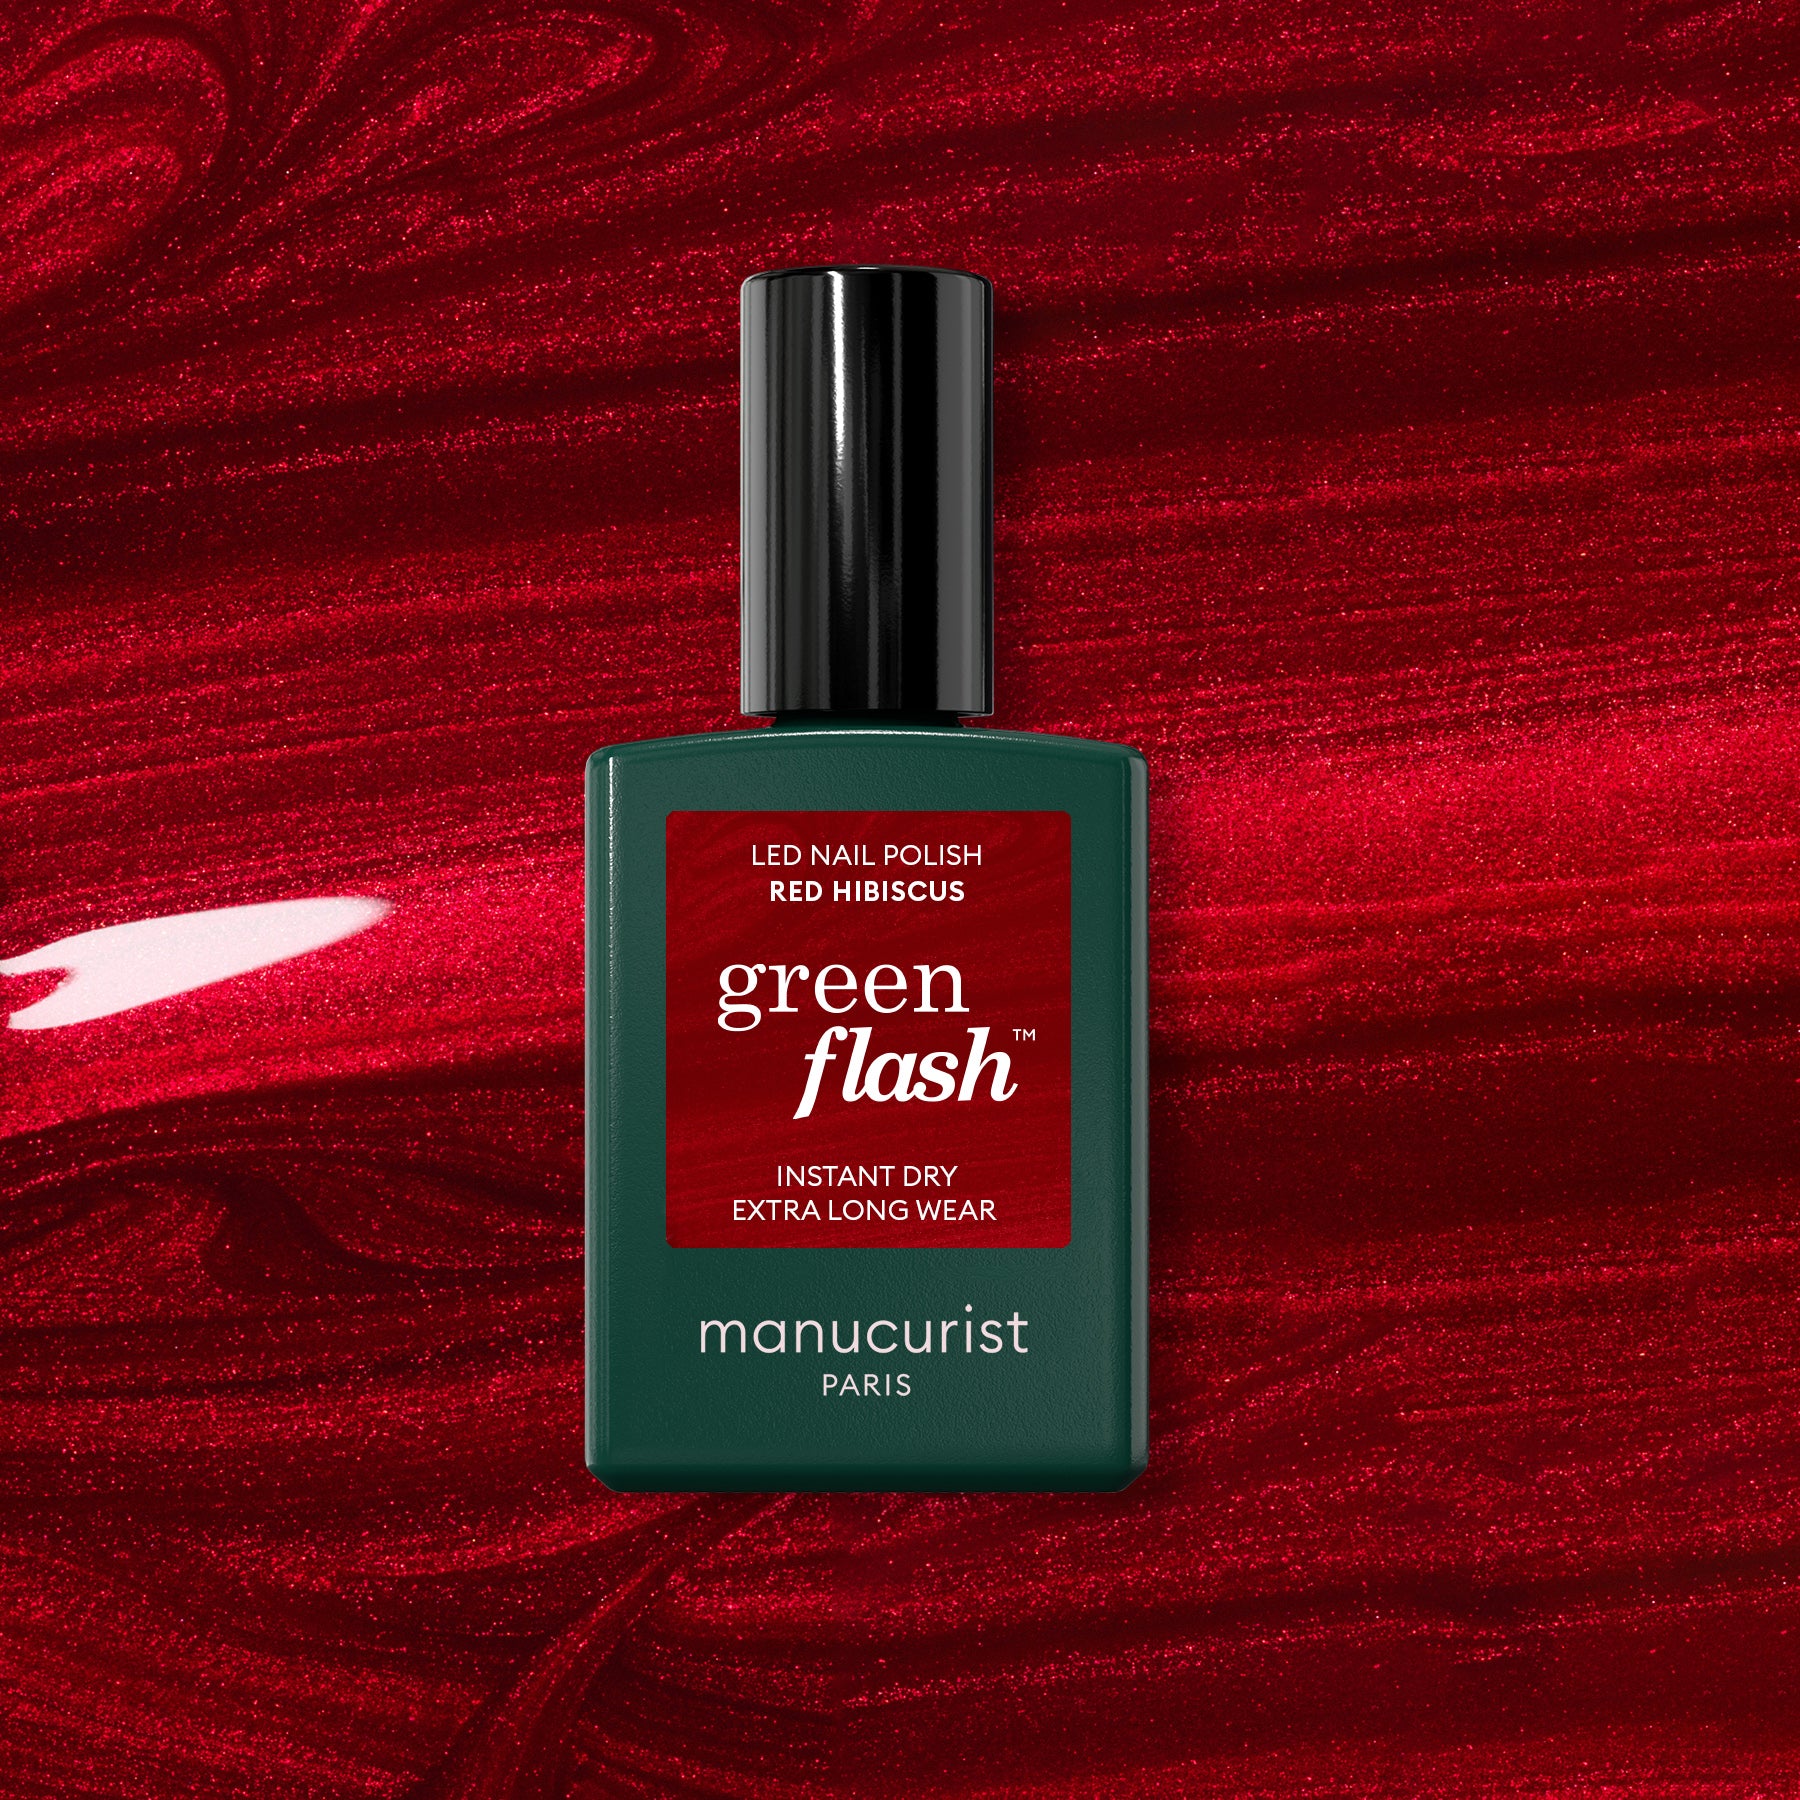 Manucurist Green Flash Gel Polish Poppy Red 15ml